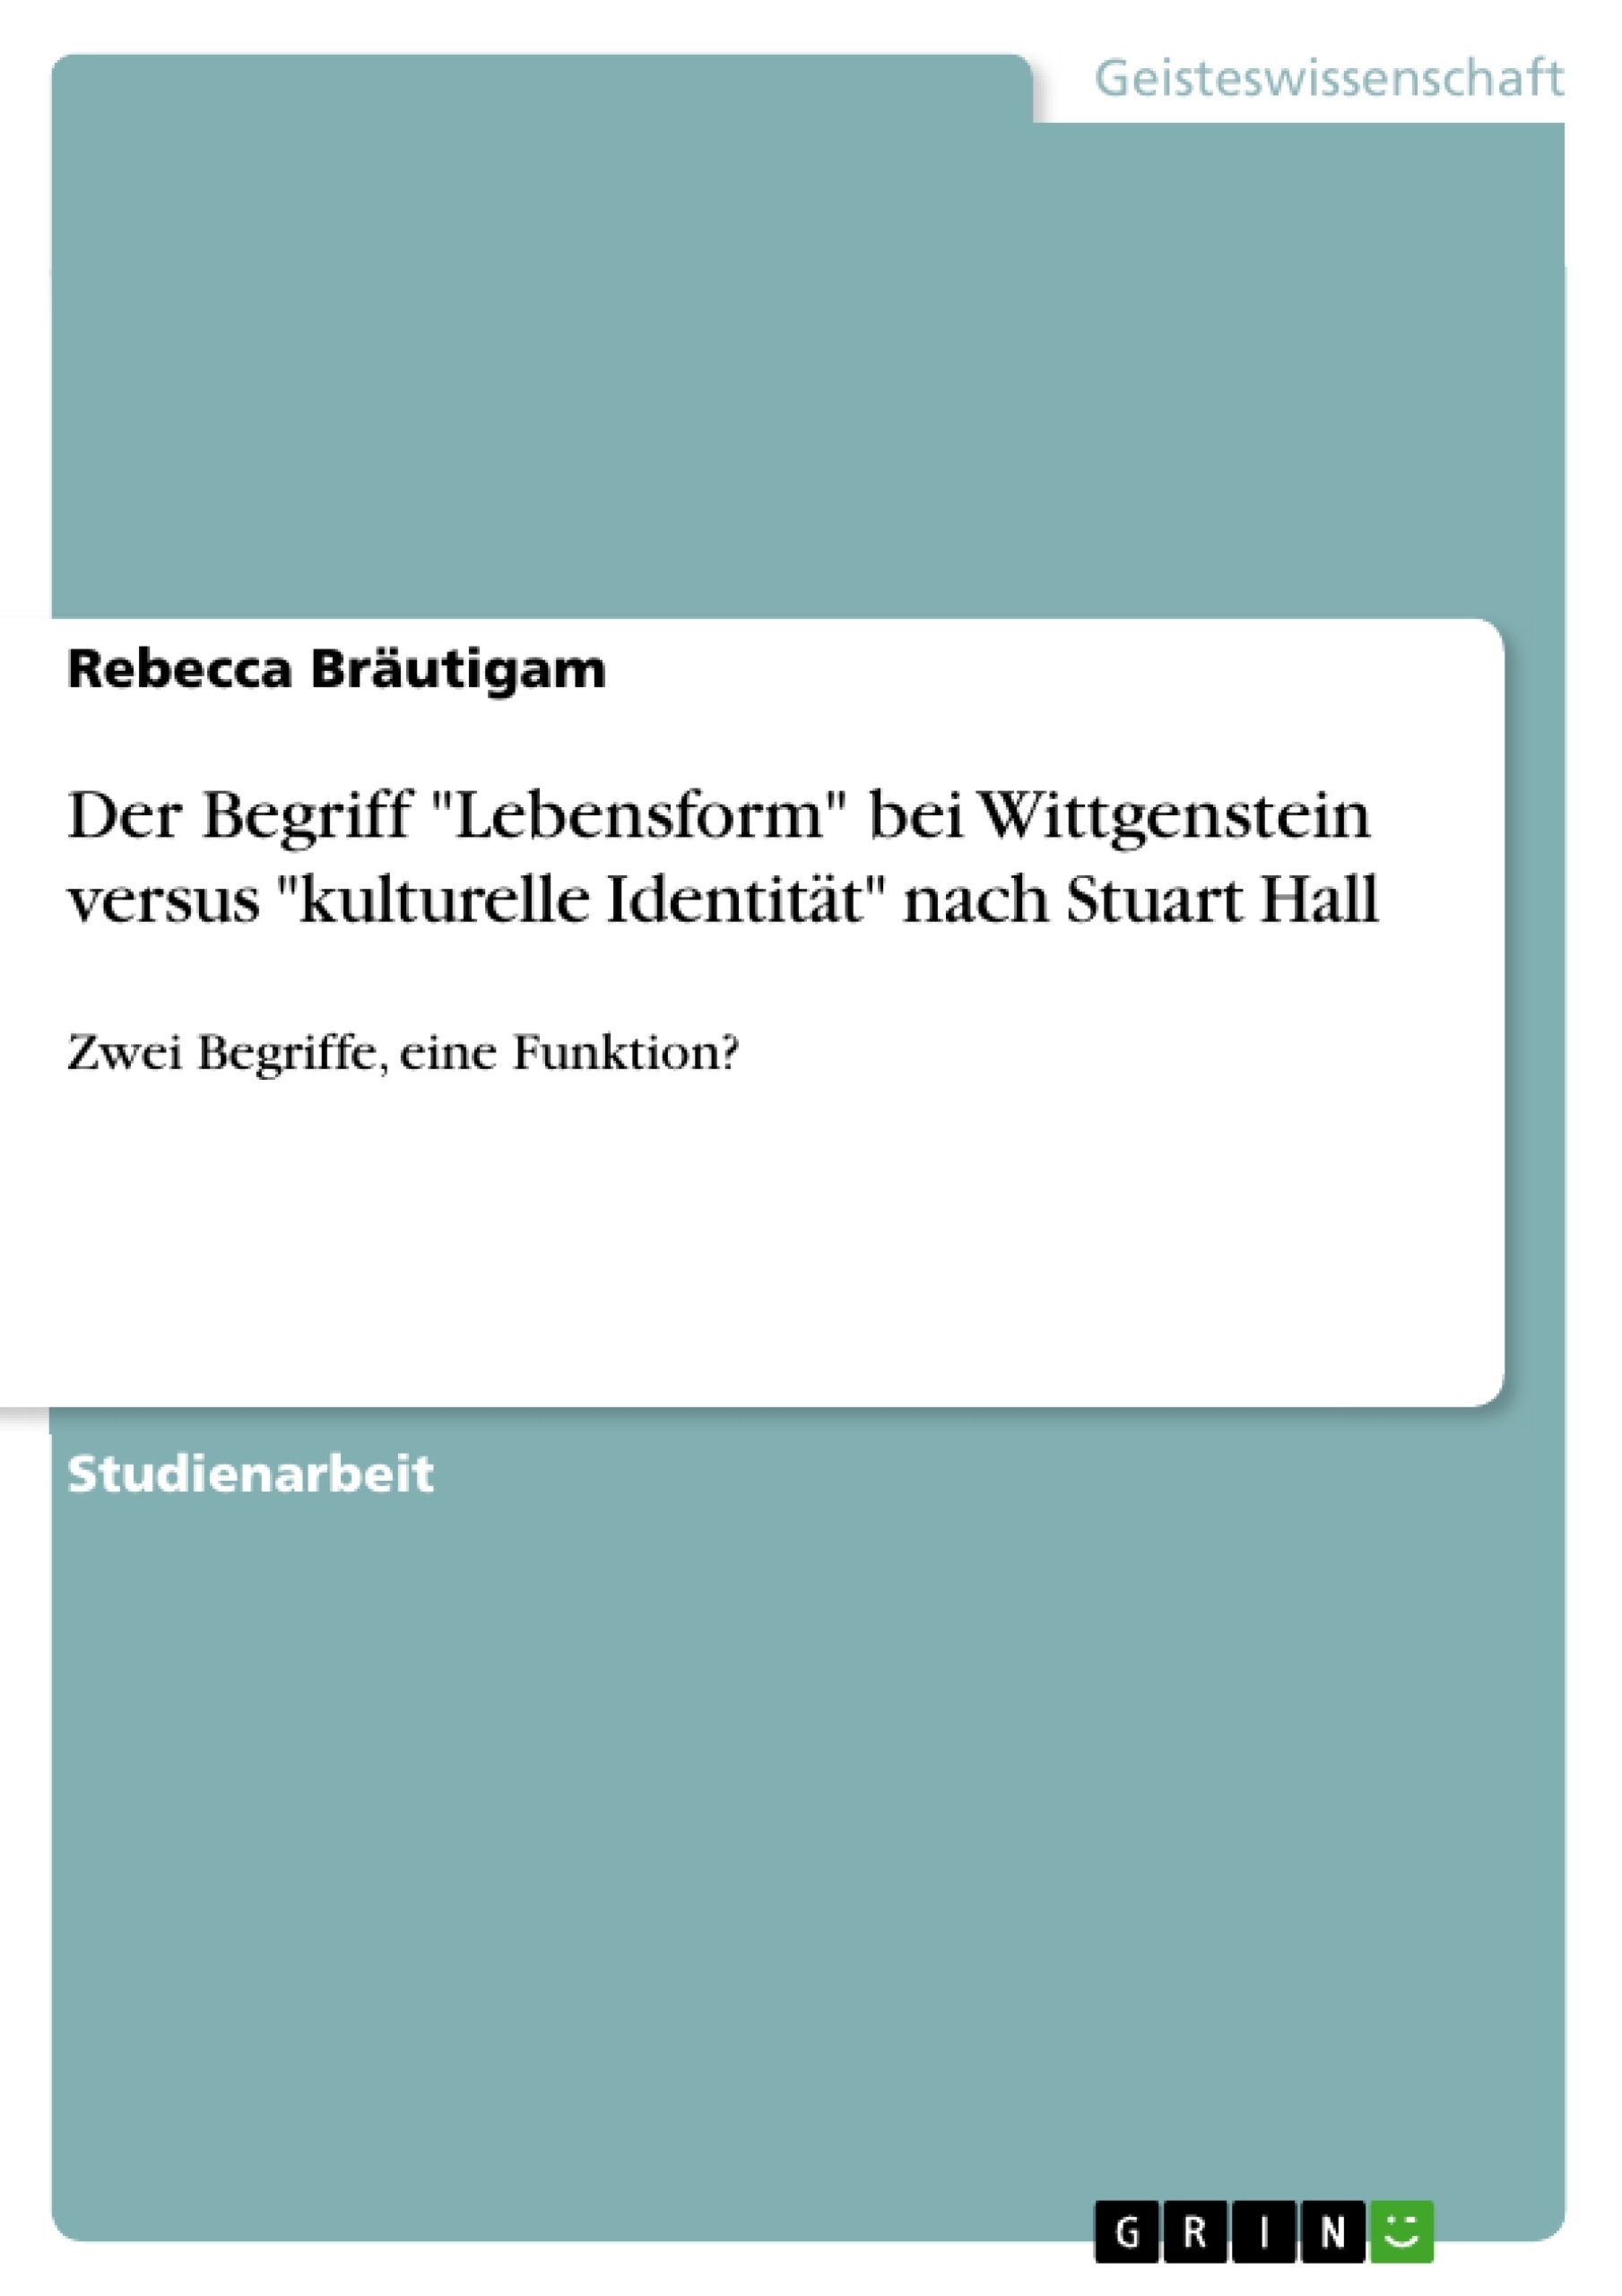 Titre: Der Begriff "Lebensform" bei Wittgenstein versus "kulturelle Identität" nach Stuart Hall